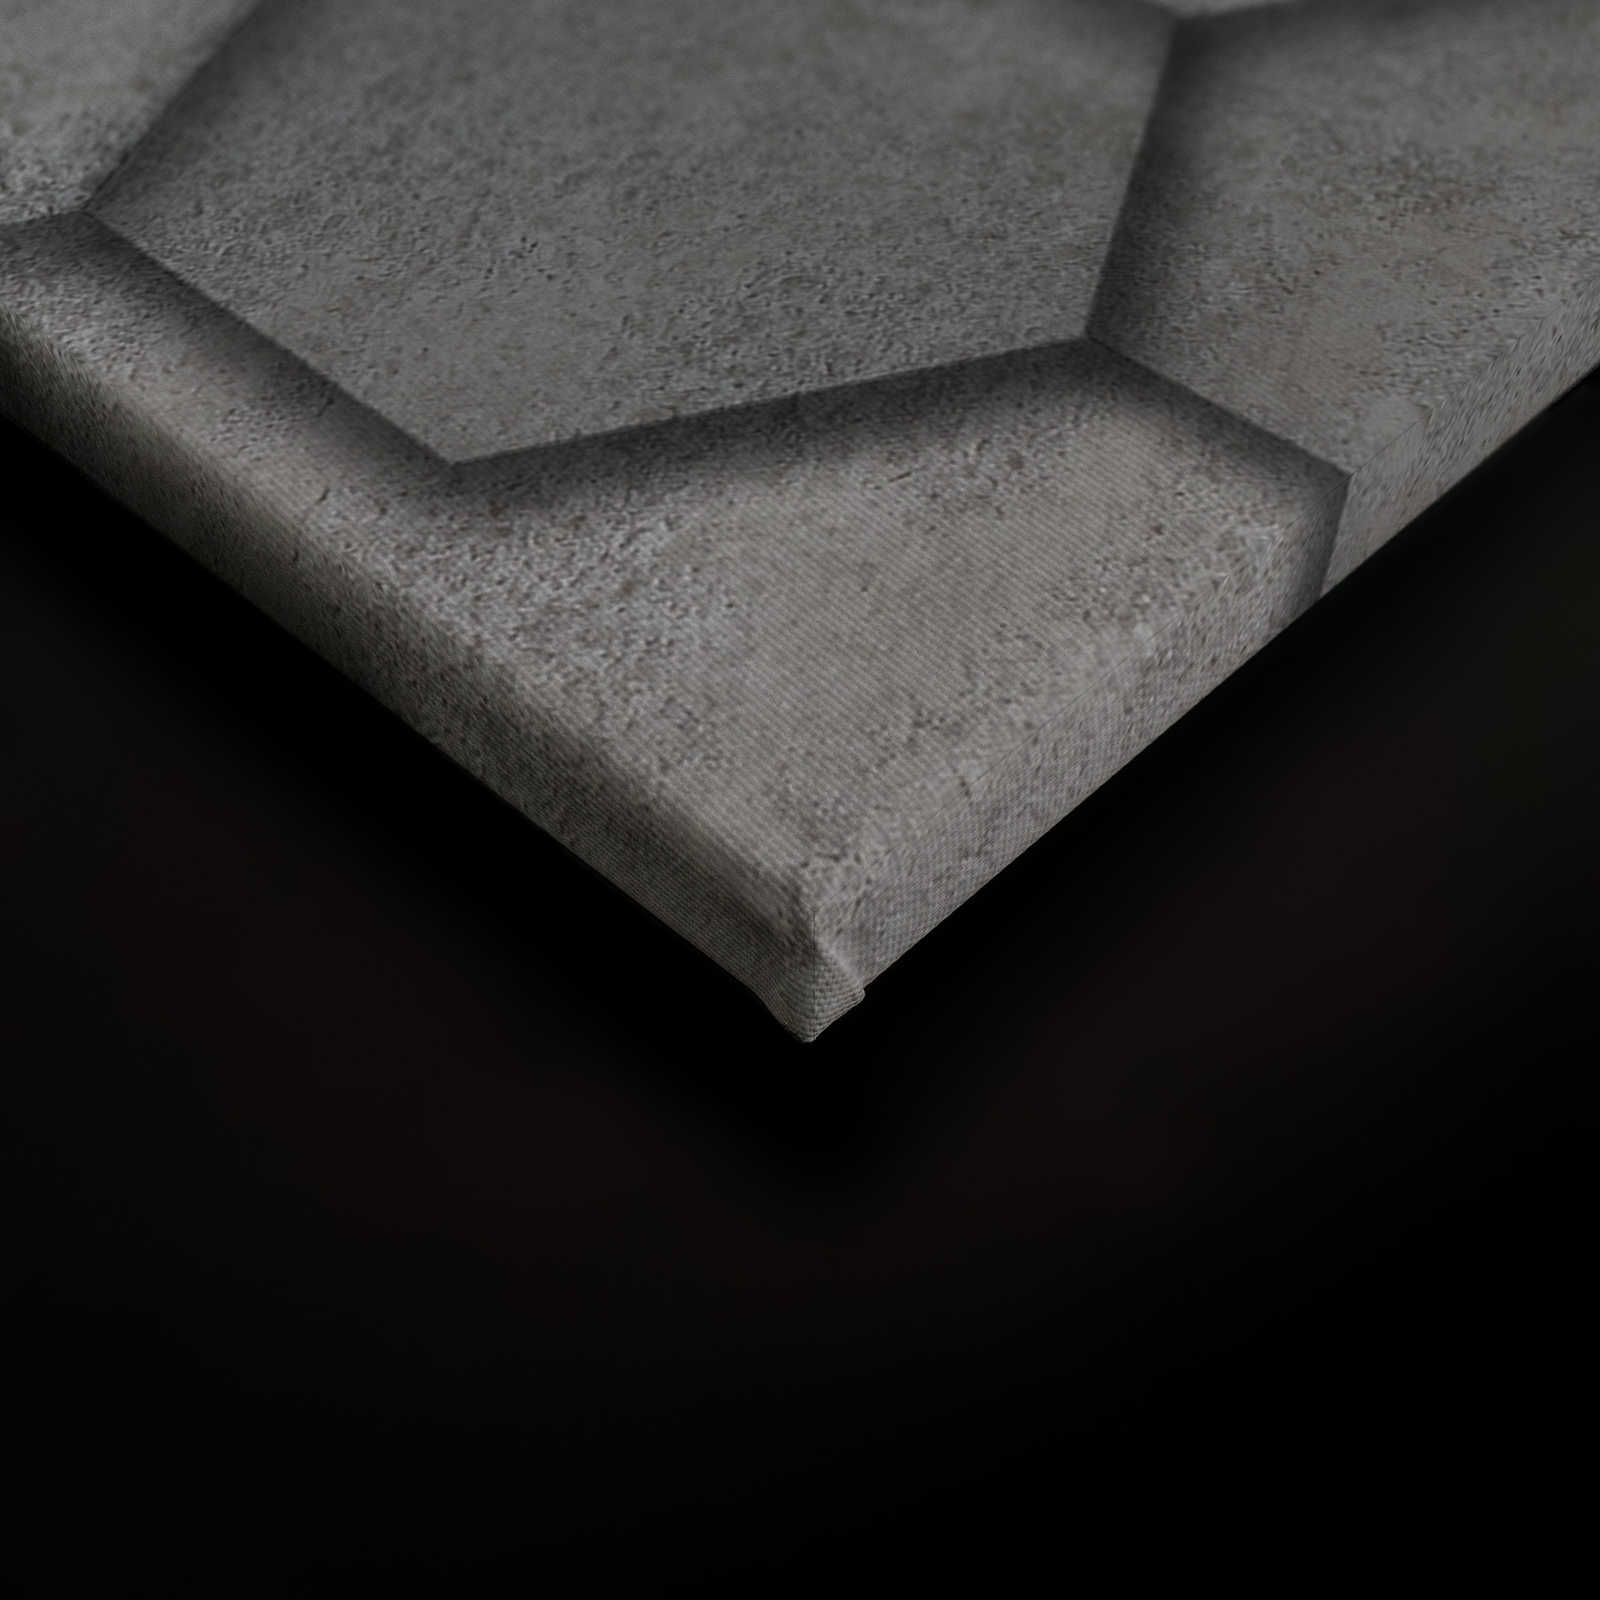             Leinwandbild mit geometrischen Kacheln sechseckig 3D-Optik | grau, silber – 0,90 m x 0,60 m
        